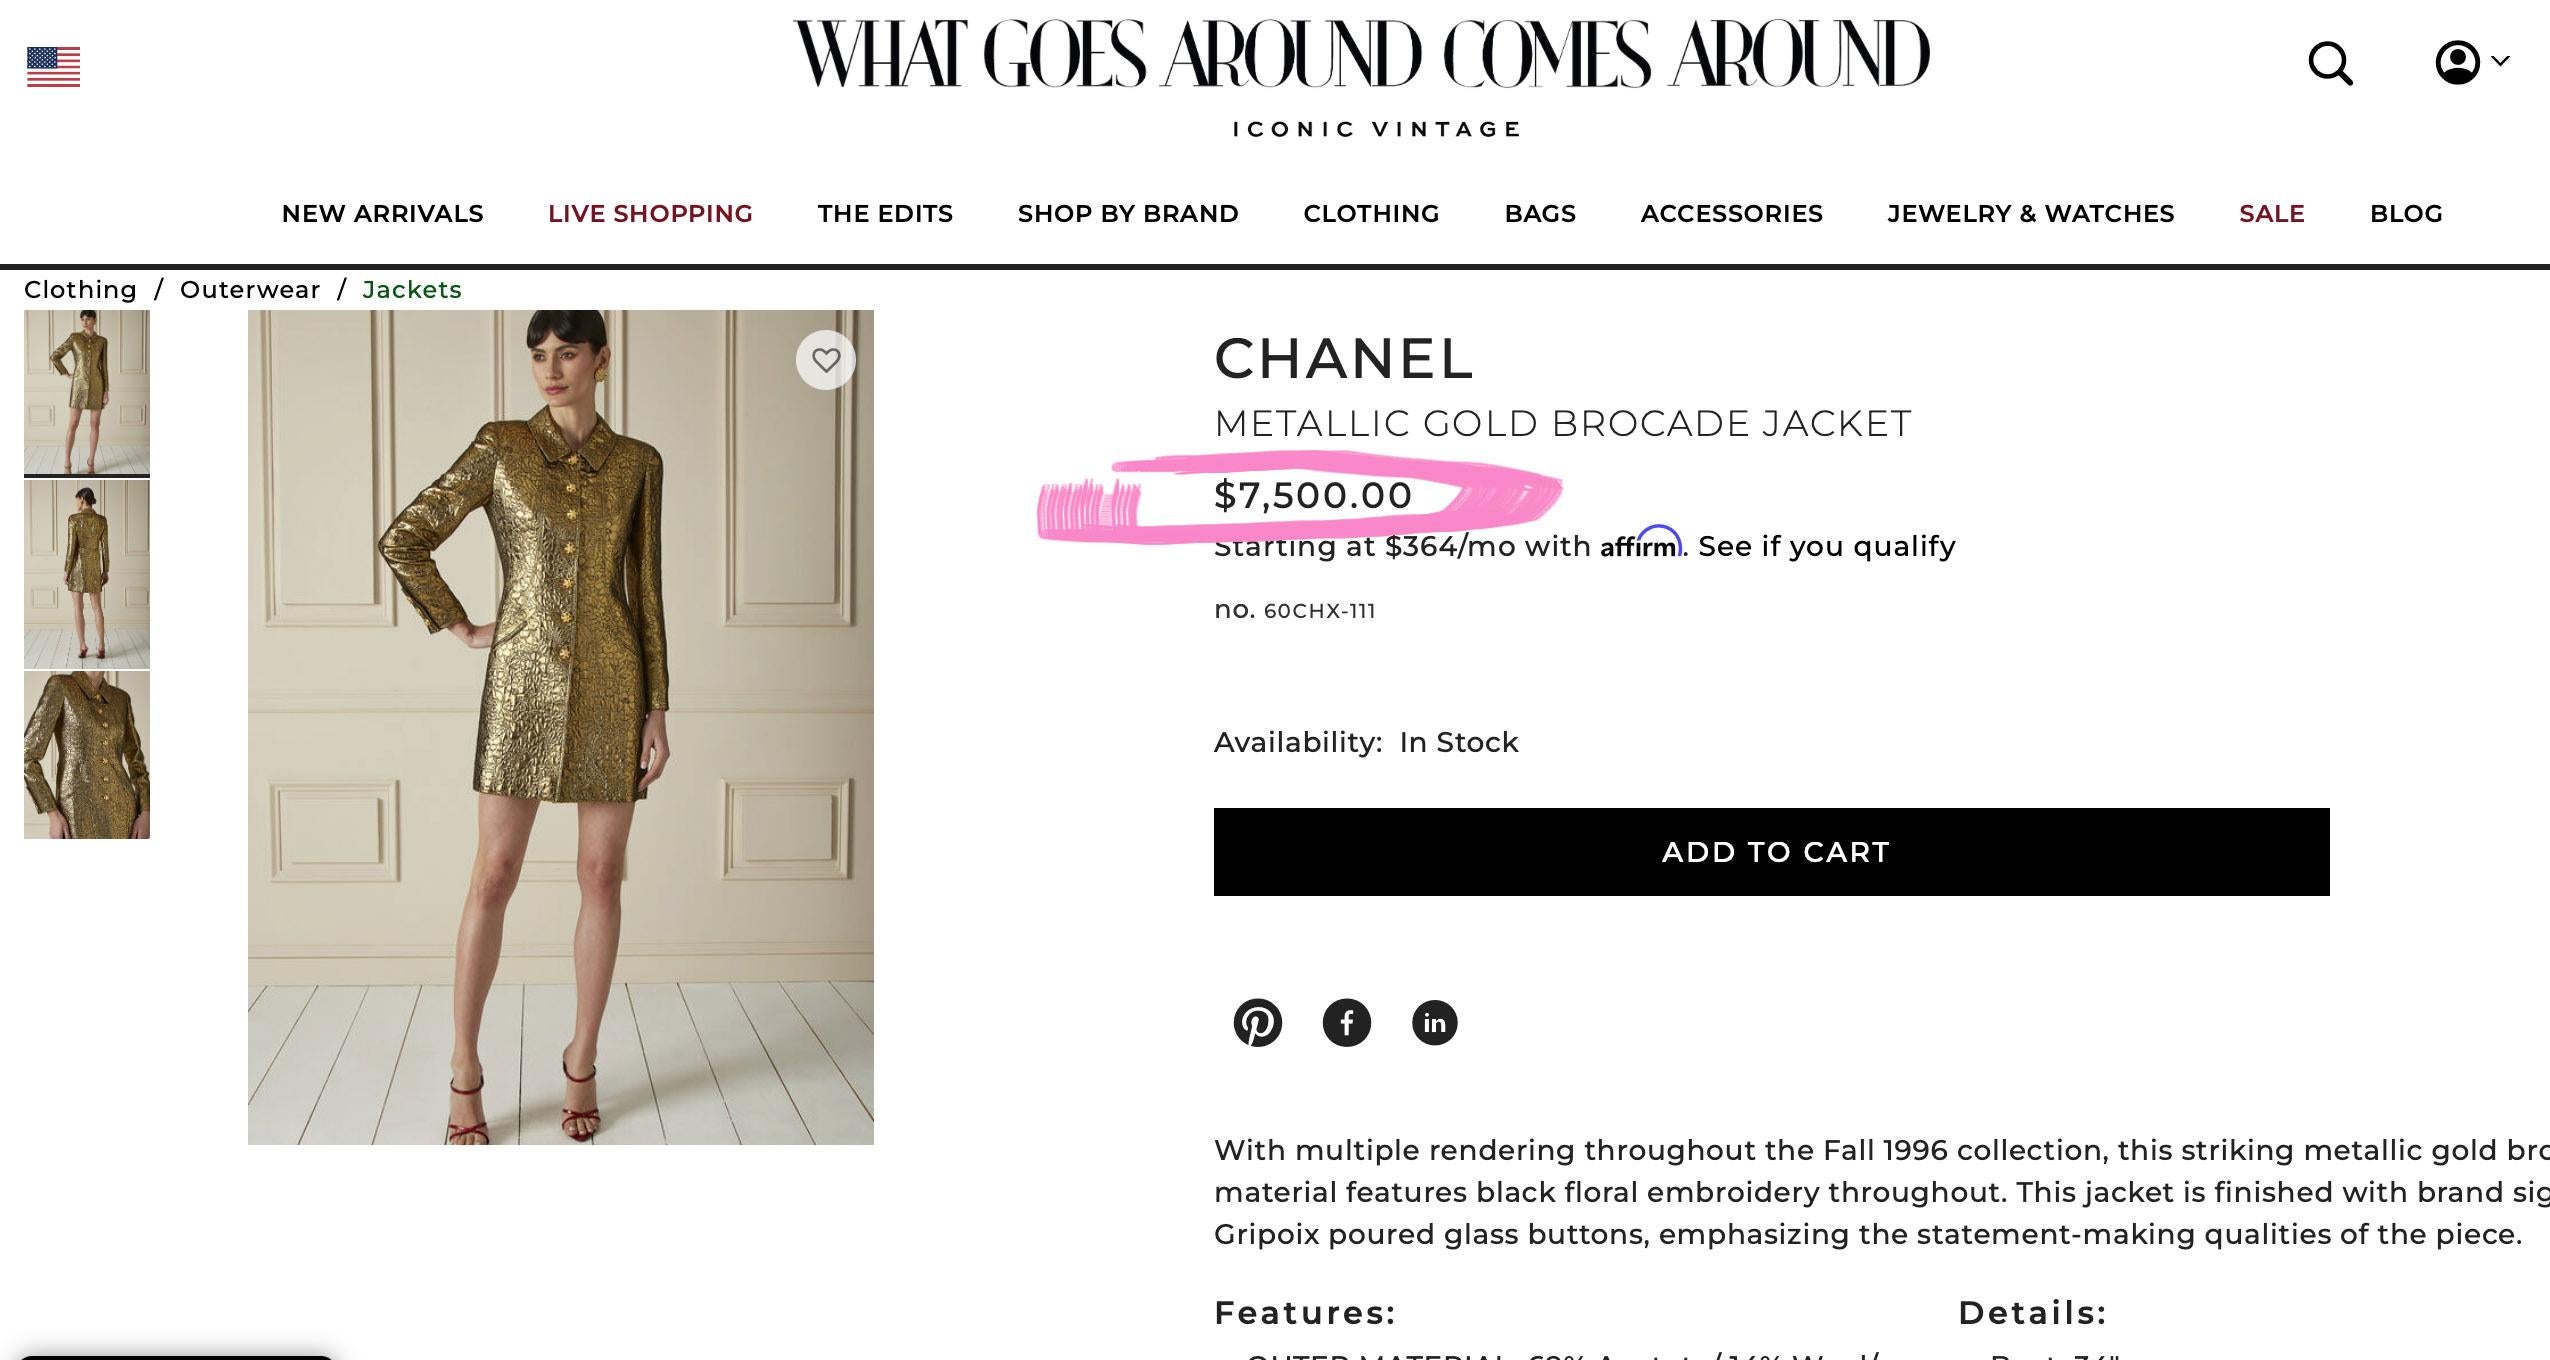 Rarissime, collectionneur Chanel veste en brocart vintage avec  broderie florale de la Collection Sal de 1996. Une pièce digne d'un musée !
Le prix en boutique était de plus de 13 000 €, les prix sur d'autres sites commencent à partir de 7 600 $.
Vu